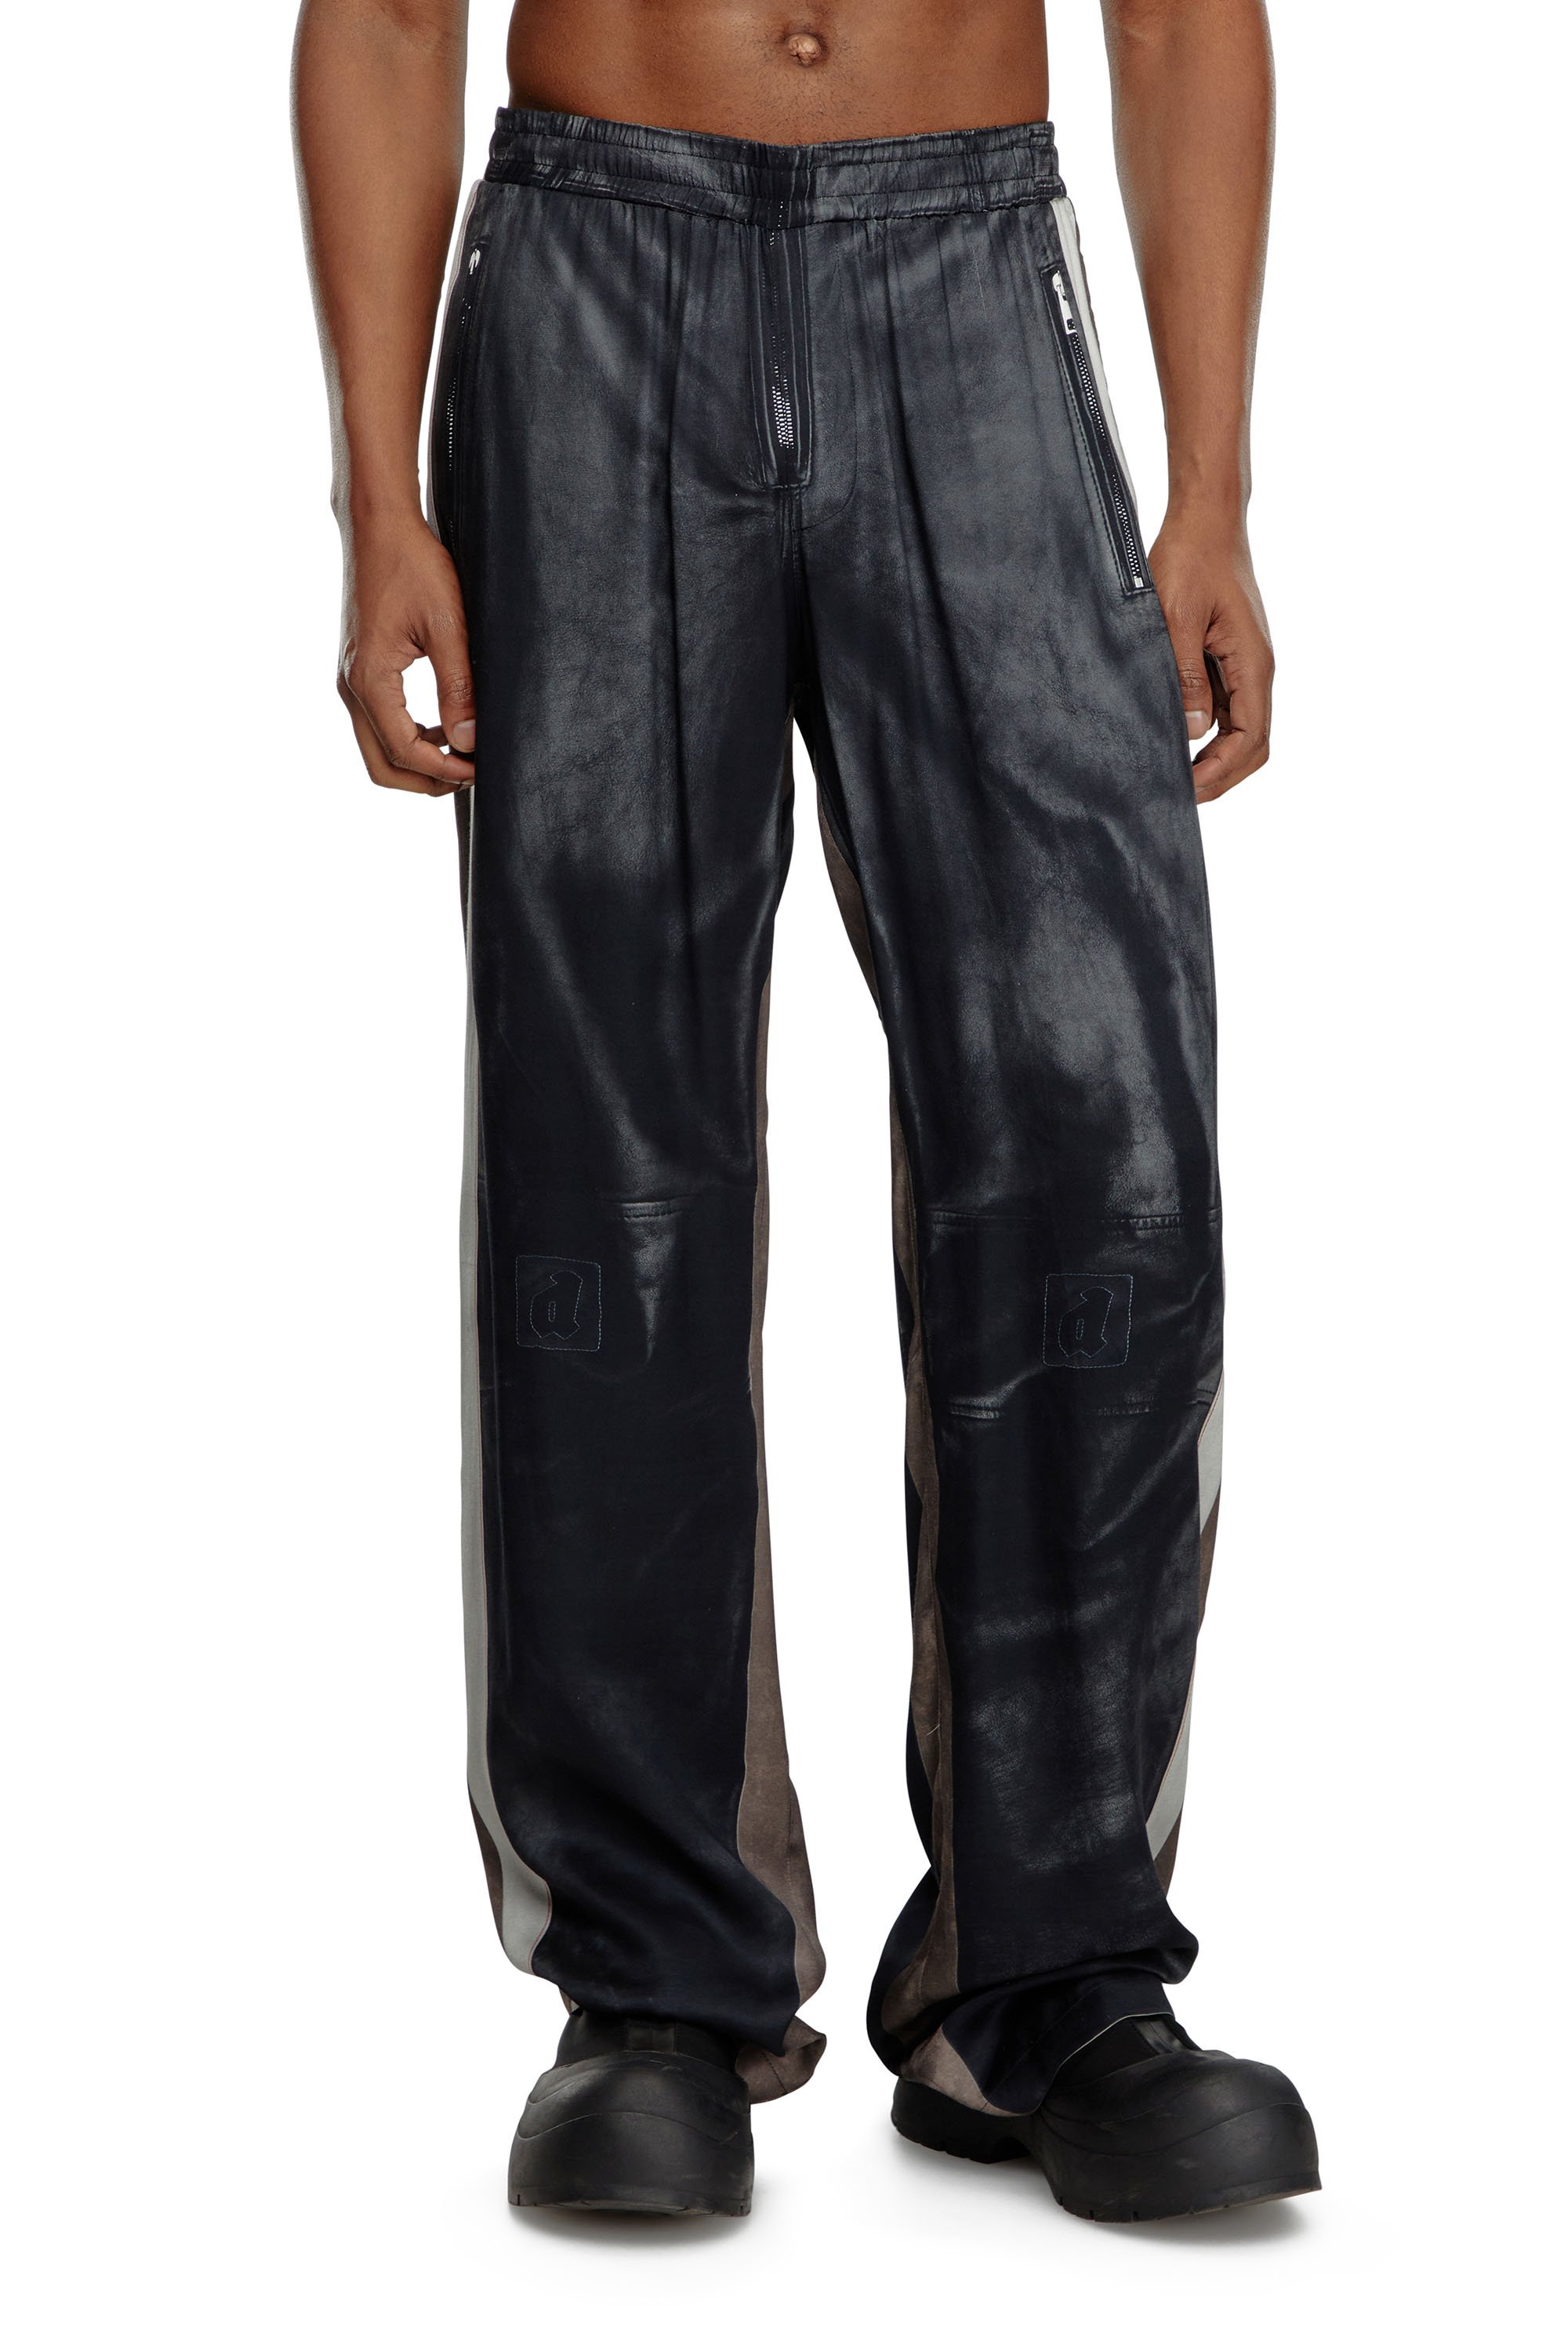 Men's pants and shorts: cargo, cotton, sweatpants | Diesel®